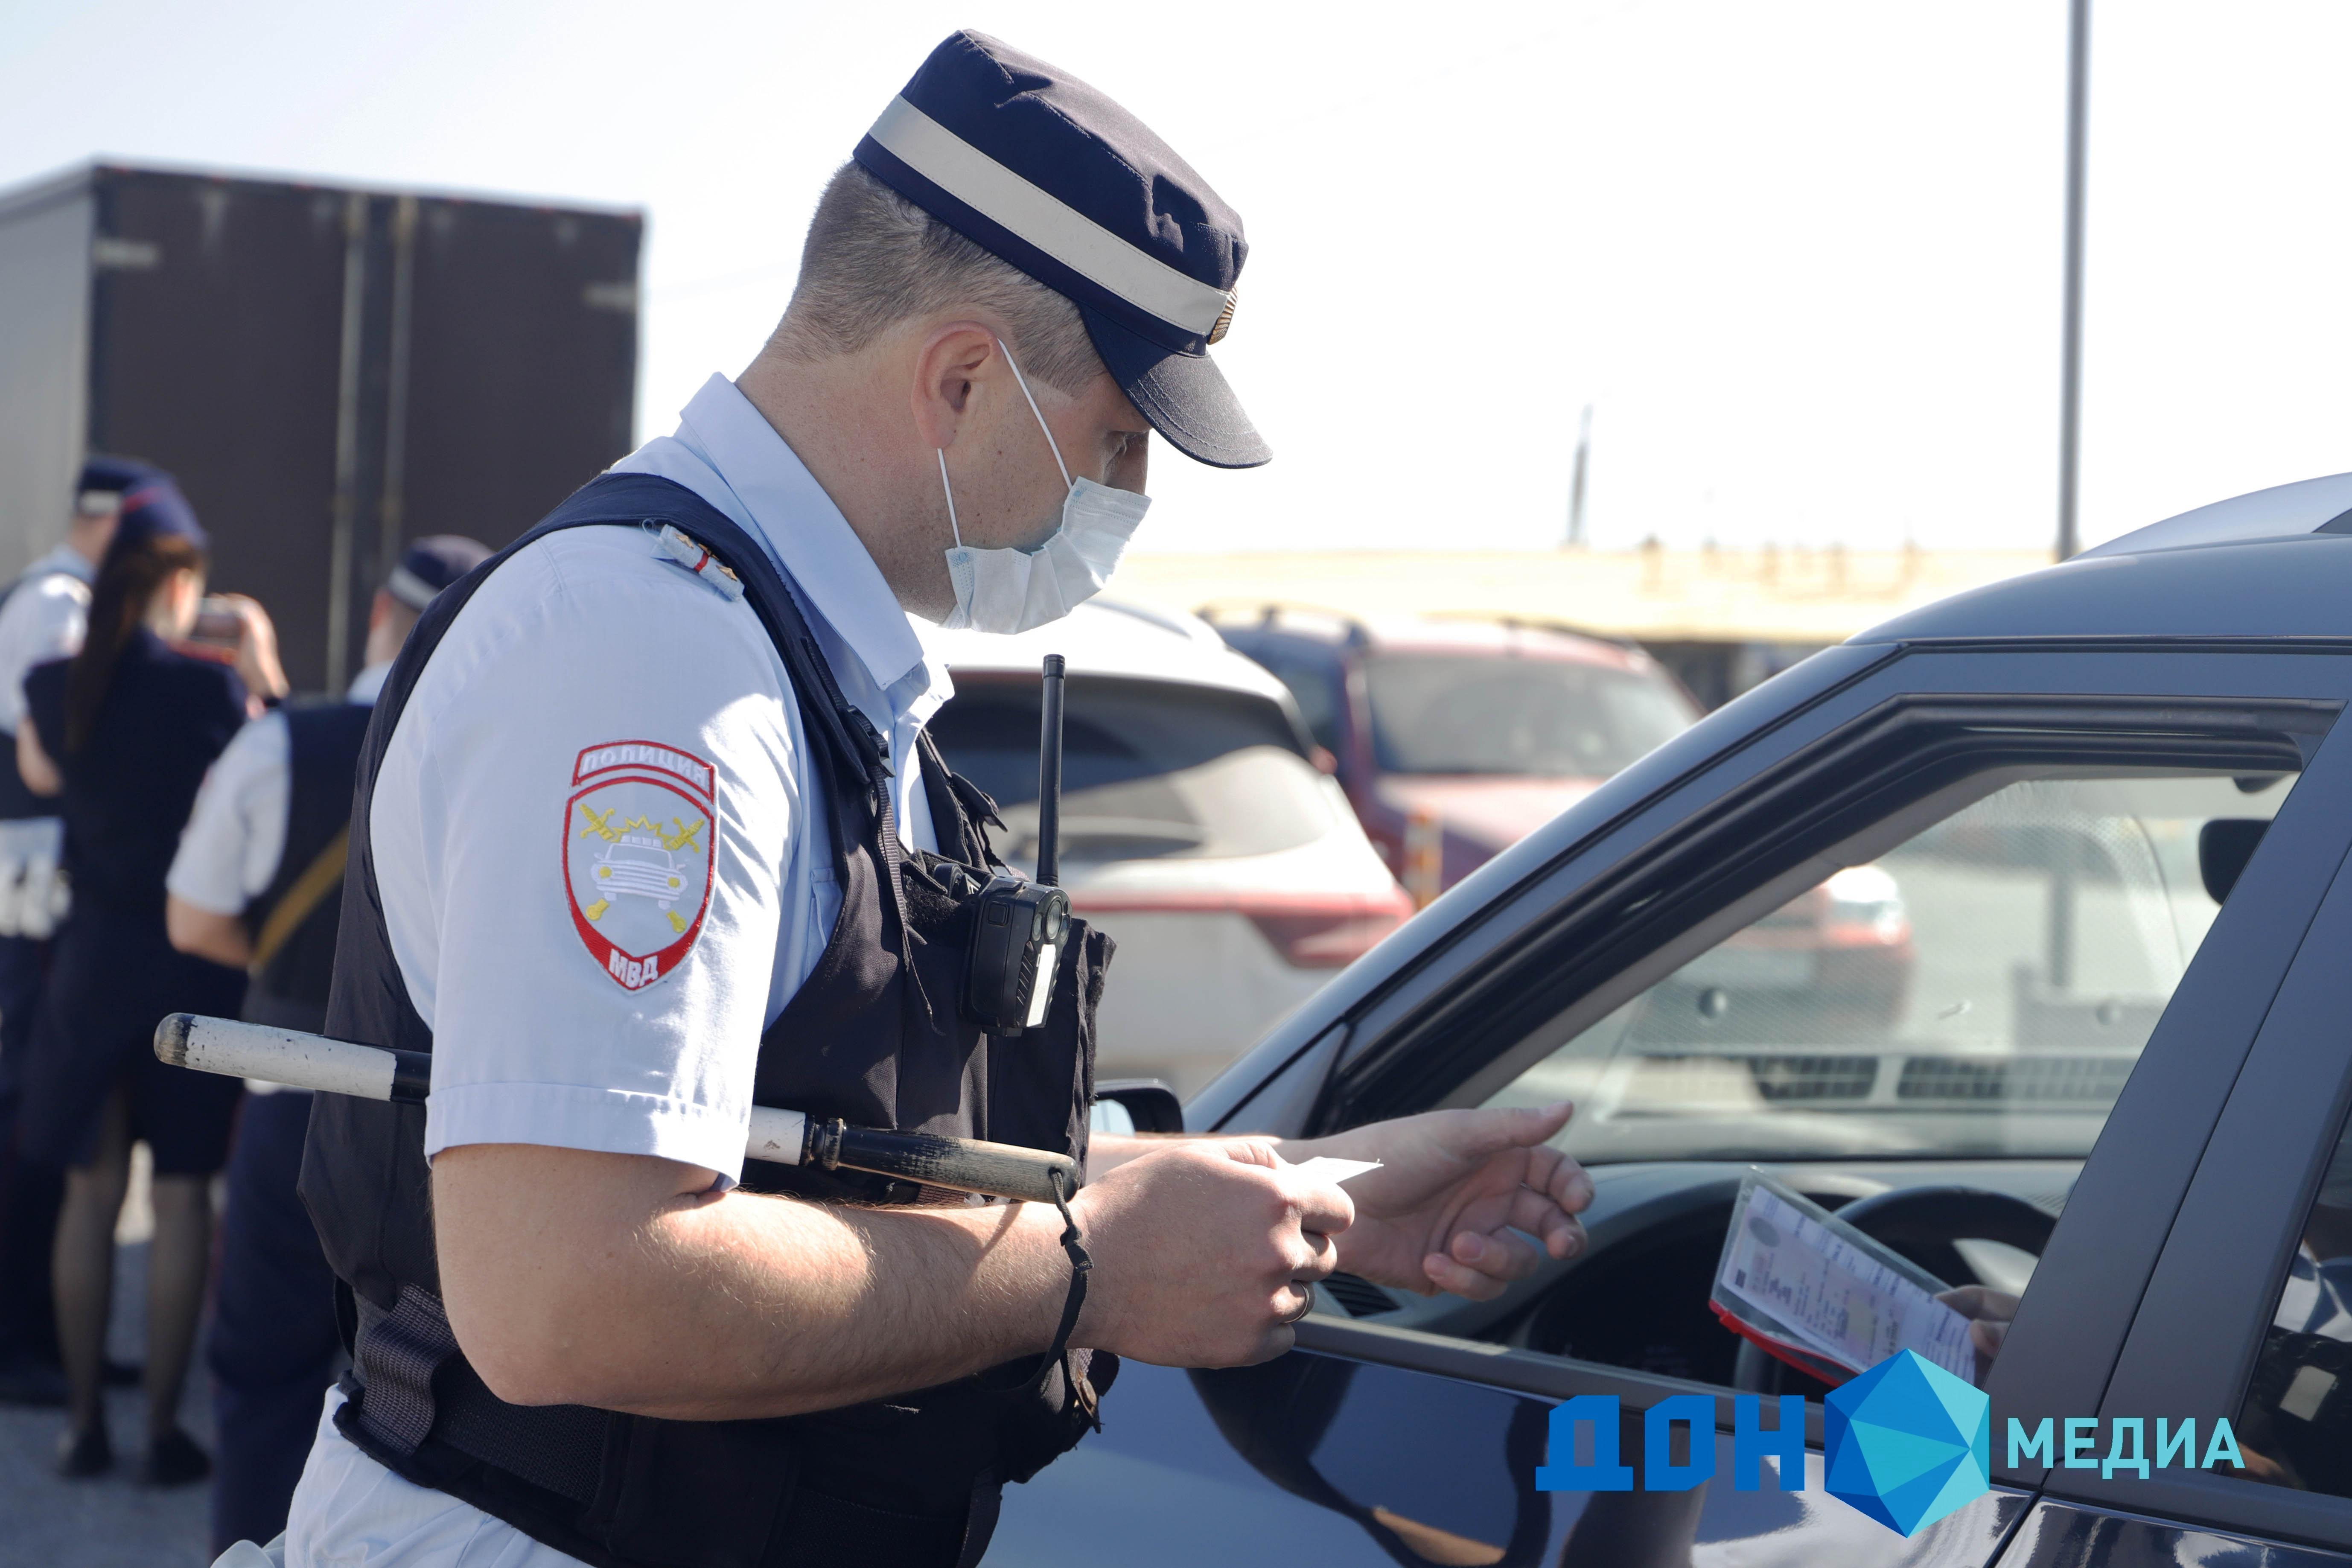 Пьяный откуп: в Егорлыкском районе водителя осудили за взятку полицейскому